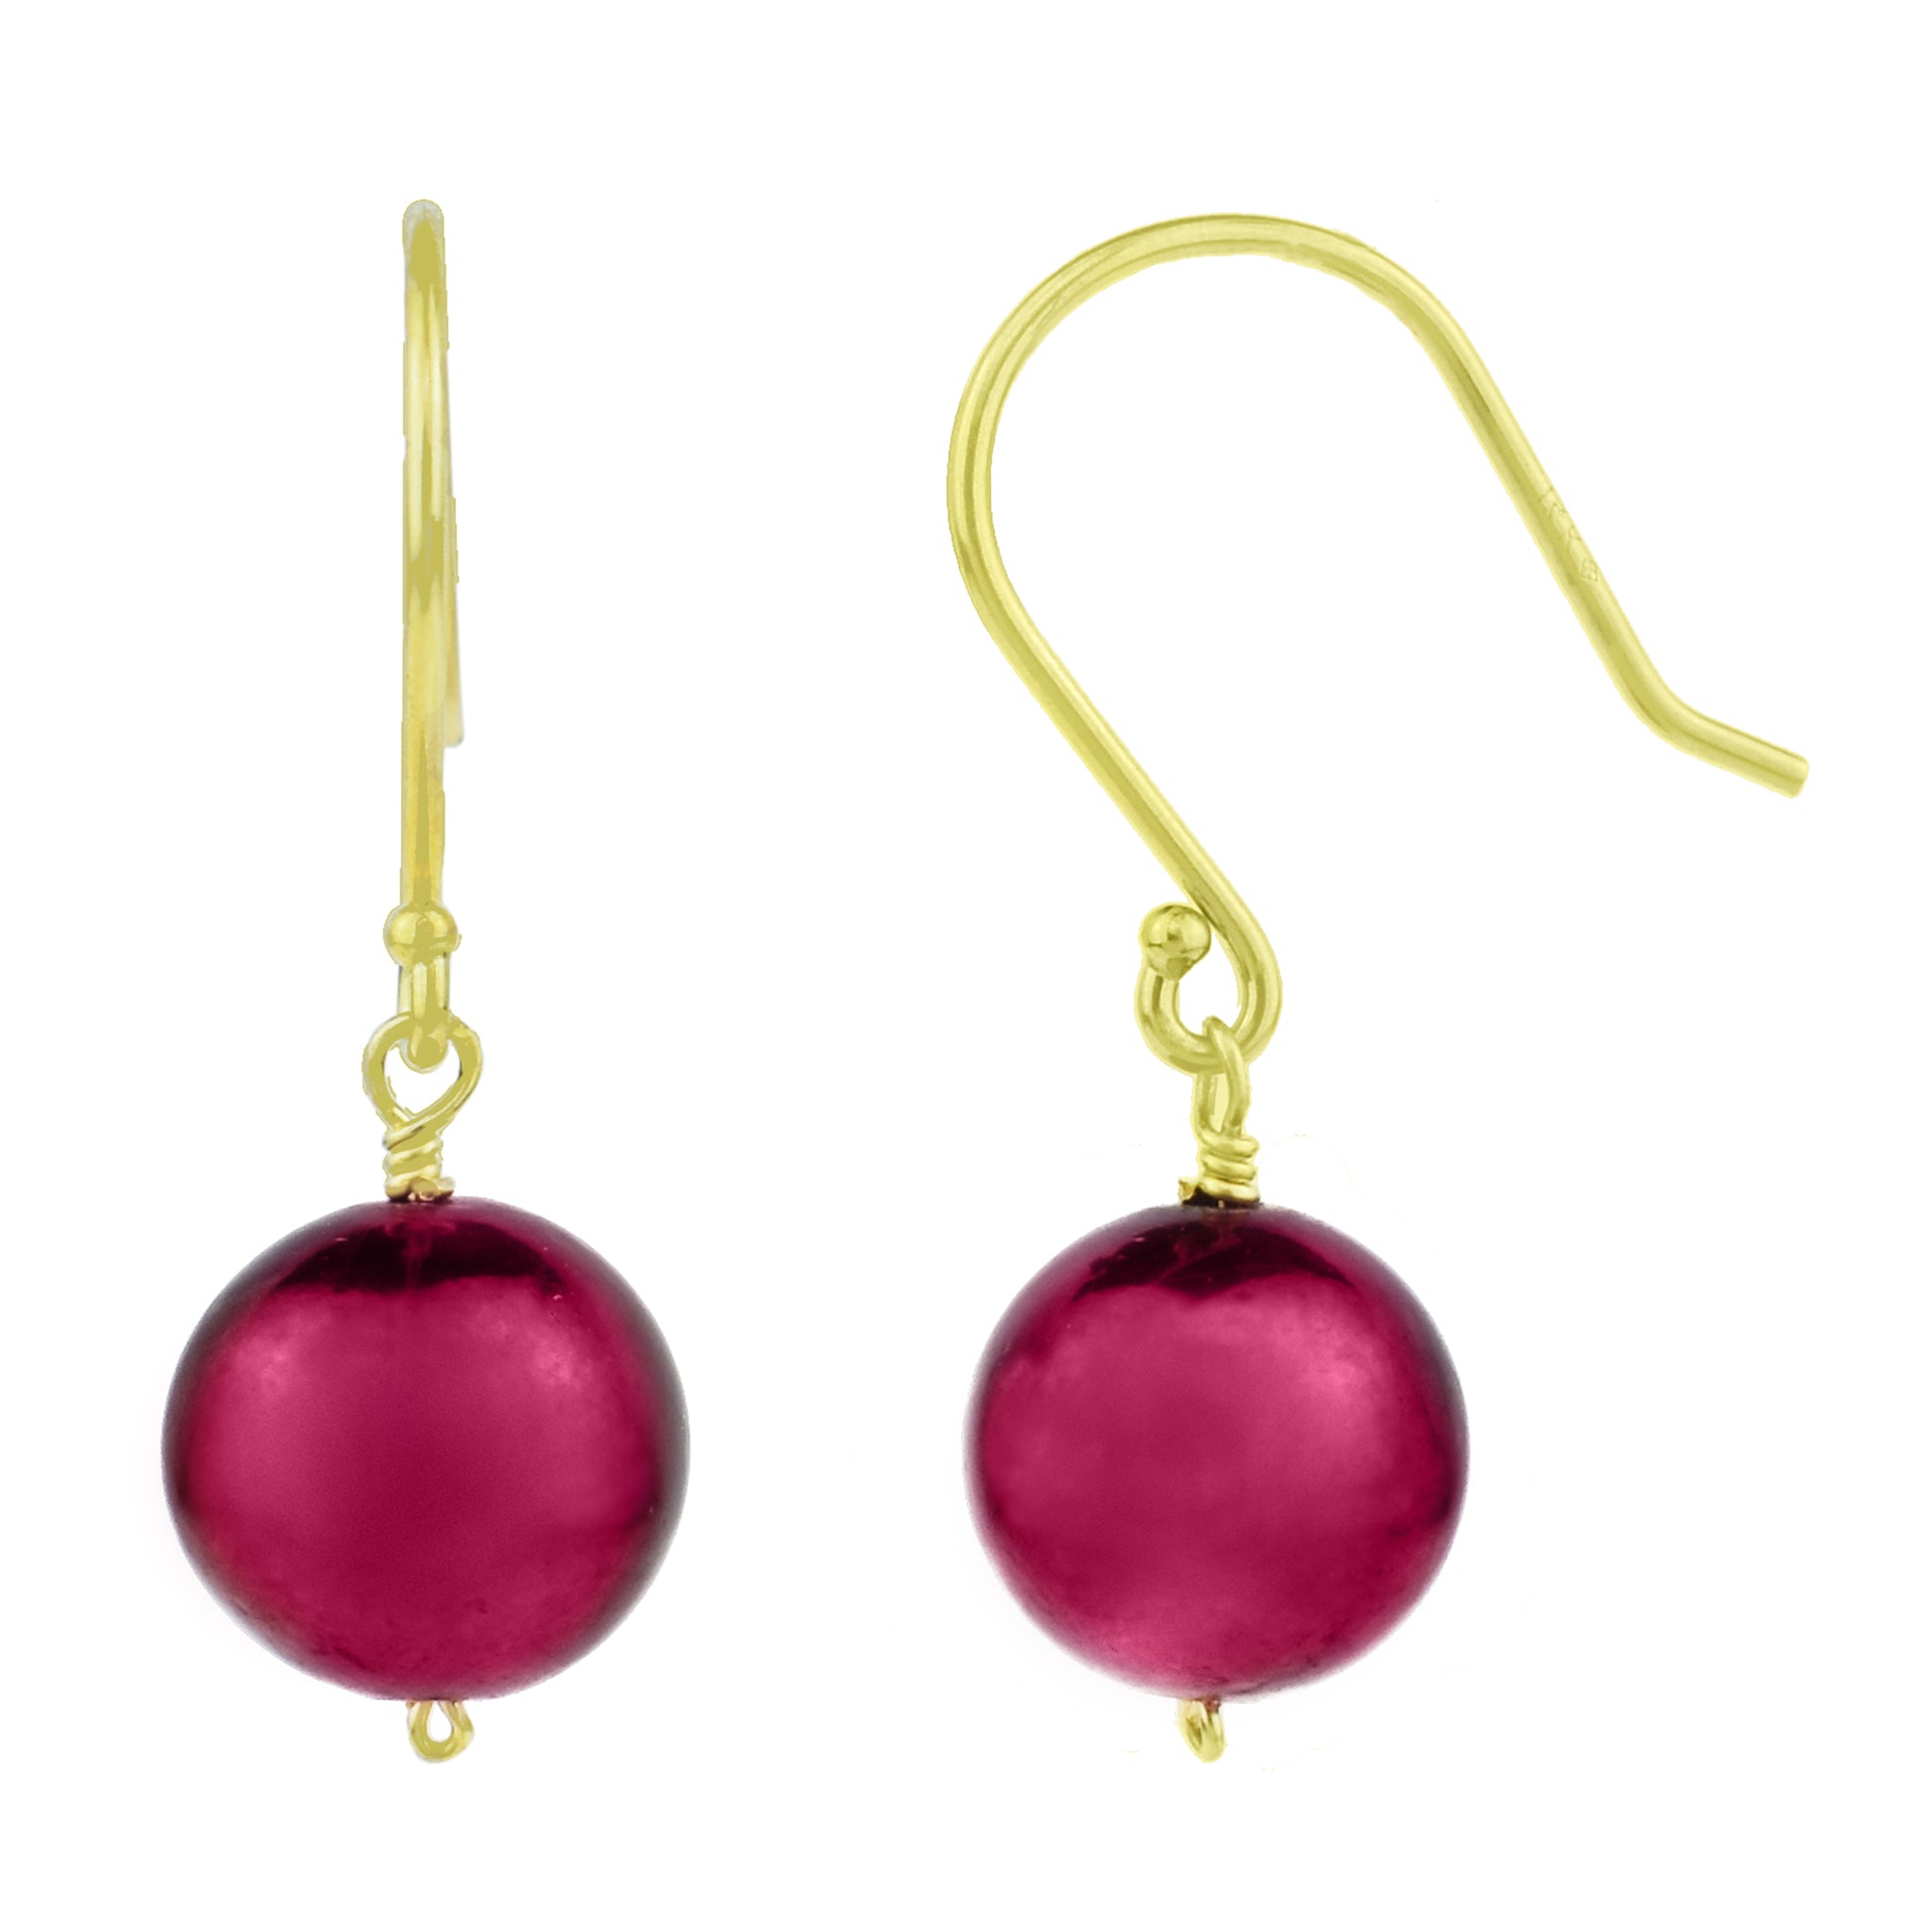 14k Purple/Plum Freshwater Pearl Necklace 72" & Earring Set